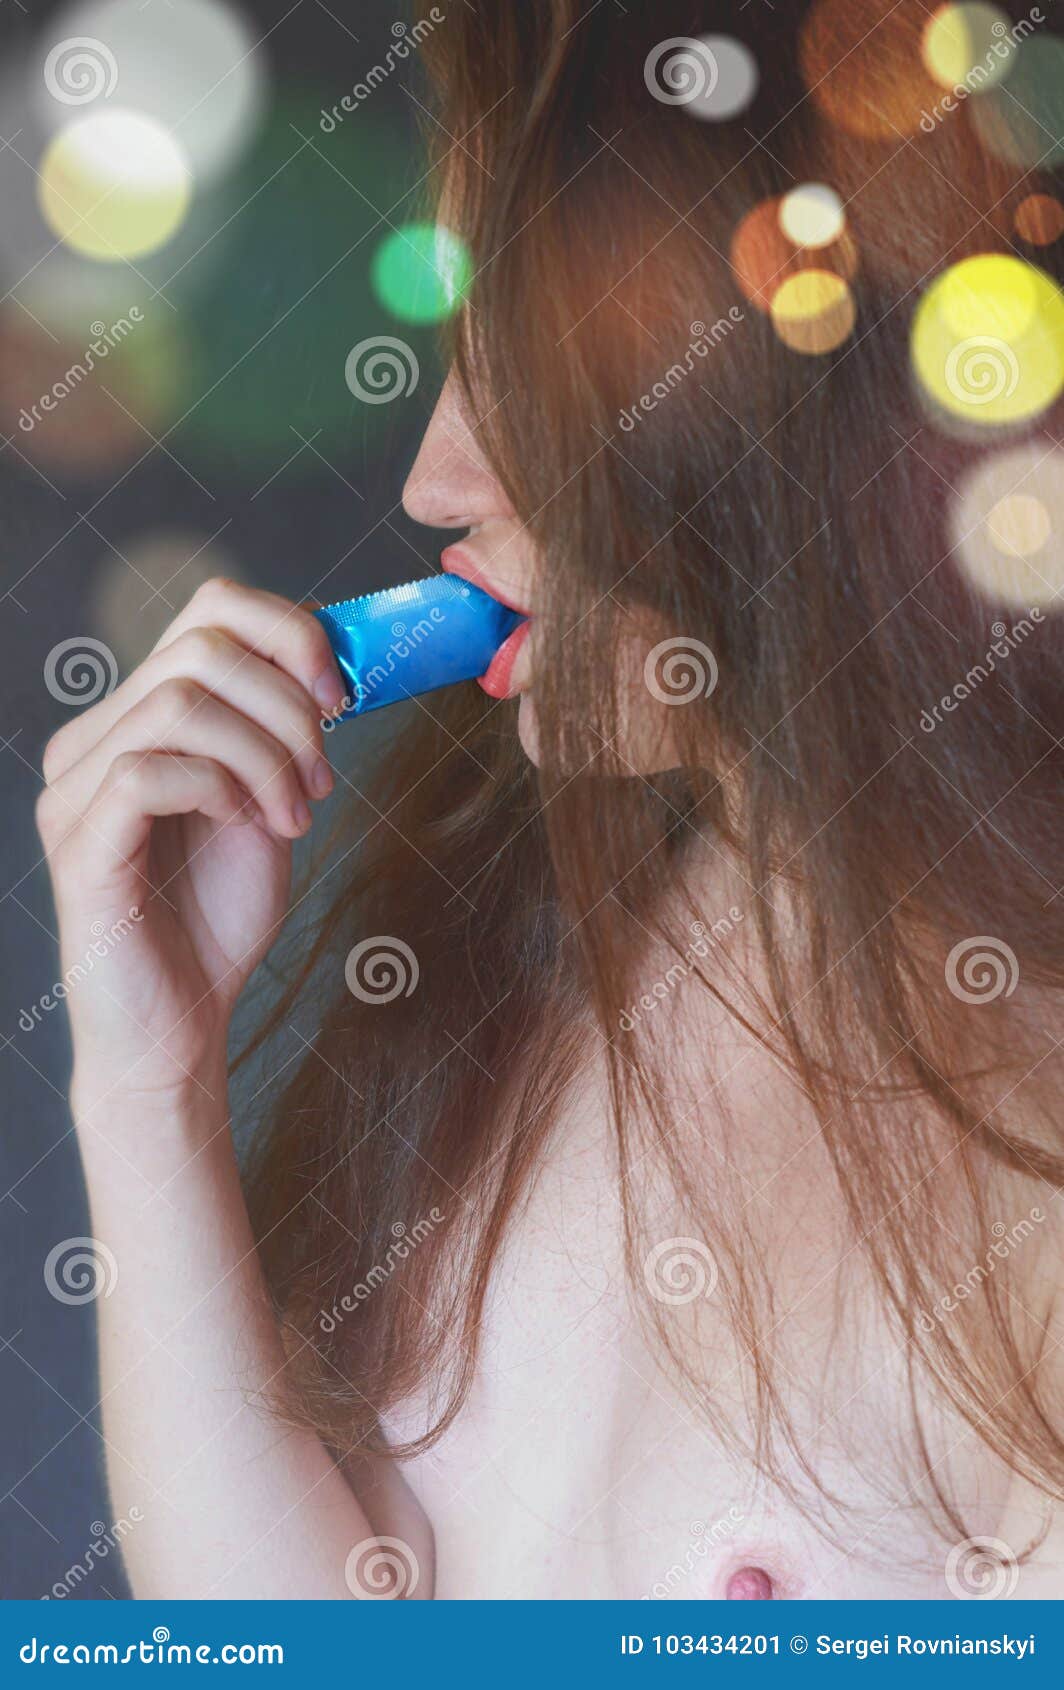 Dem kondom mund mit Kondom überziehen: